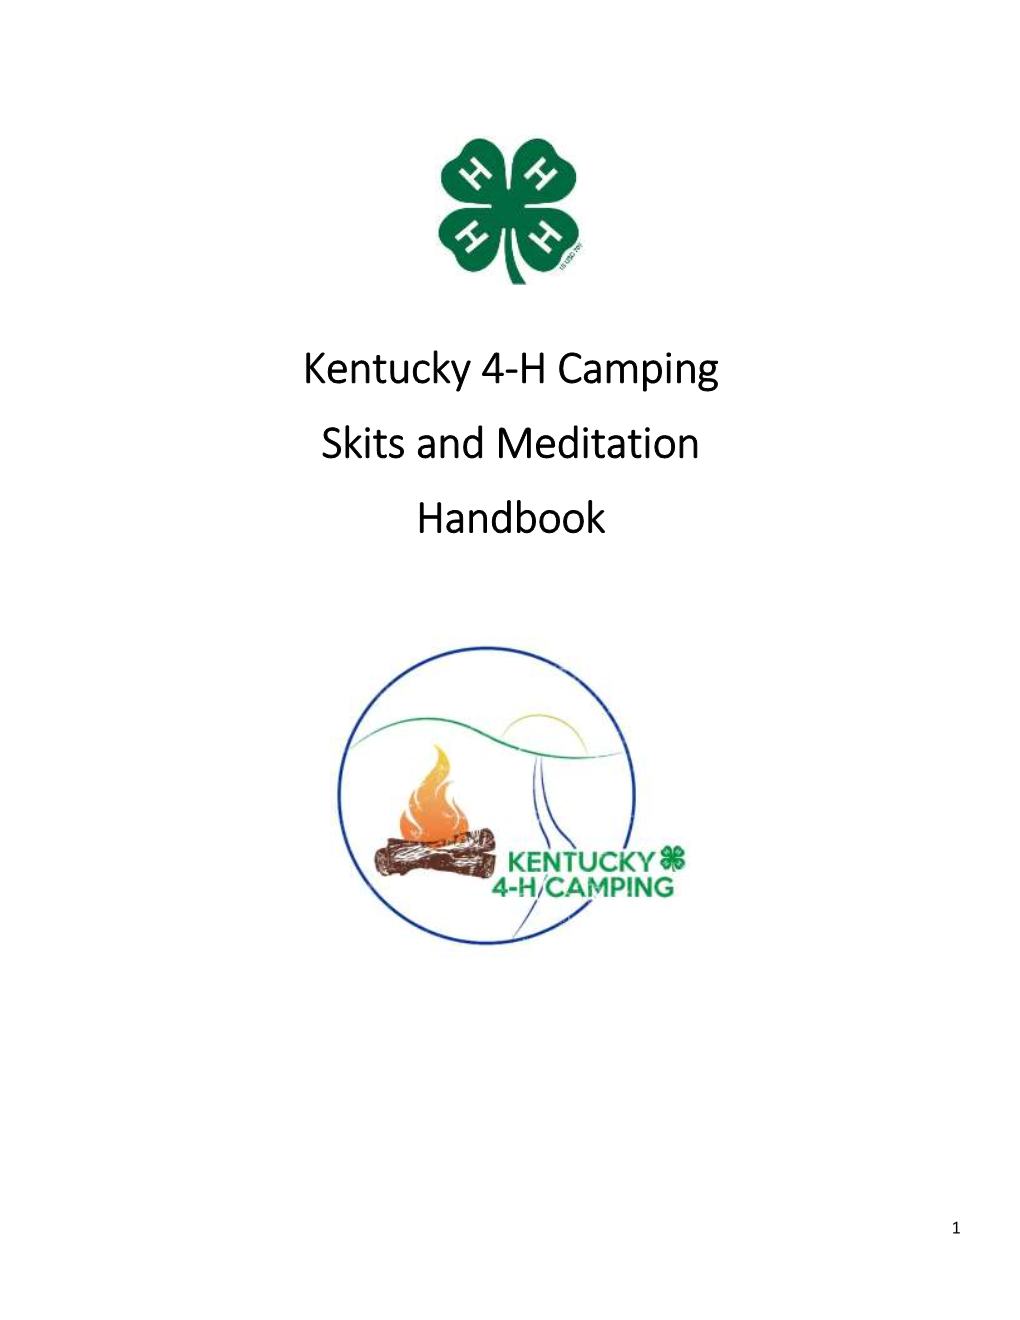 Kentucky 4-H Camping Skits and Meditation Handbook